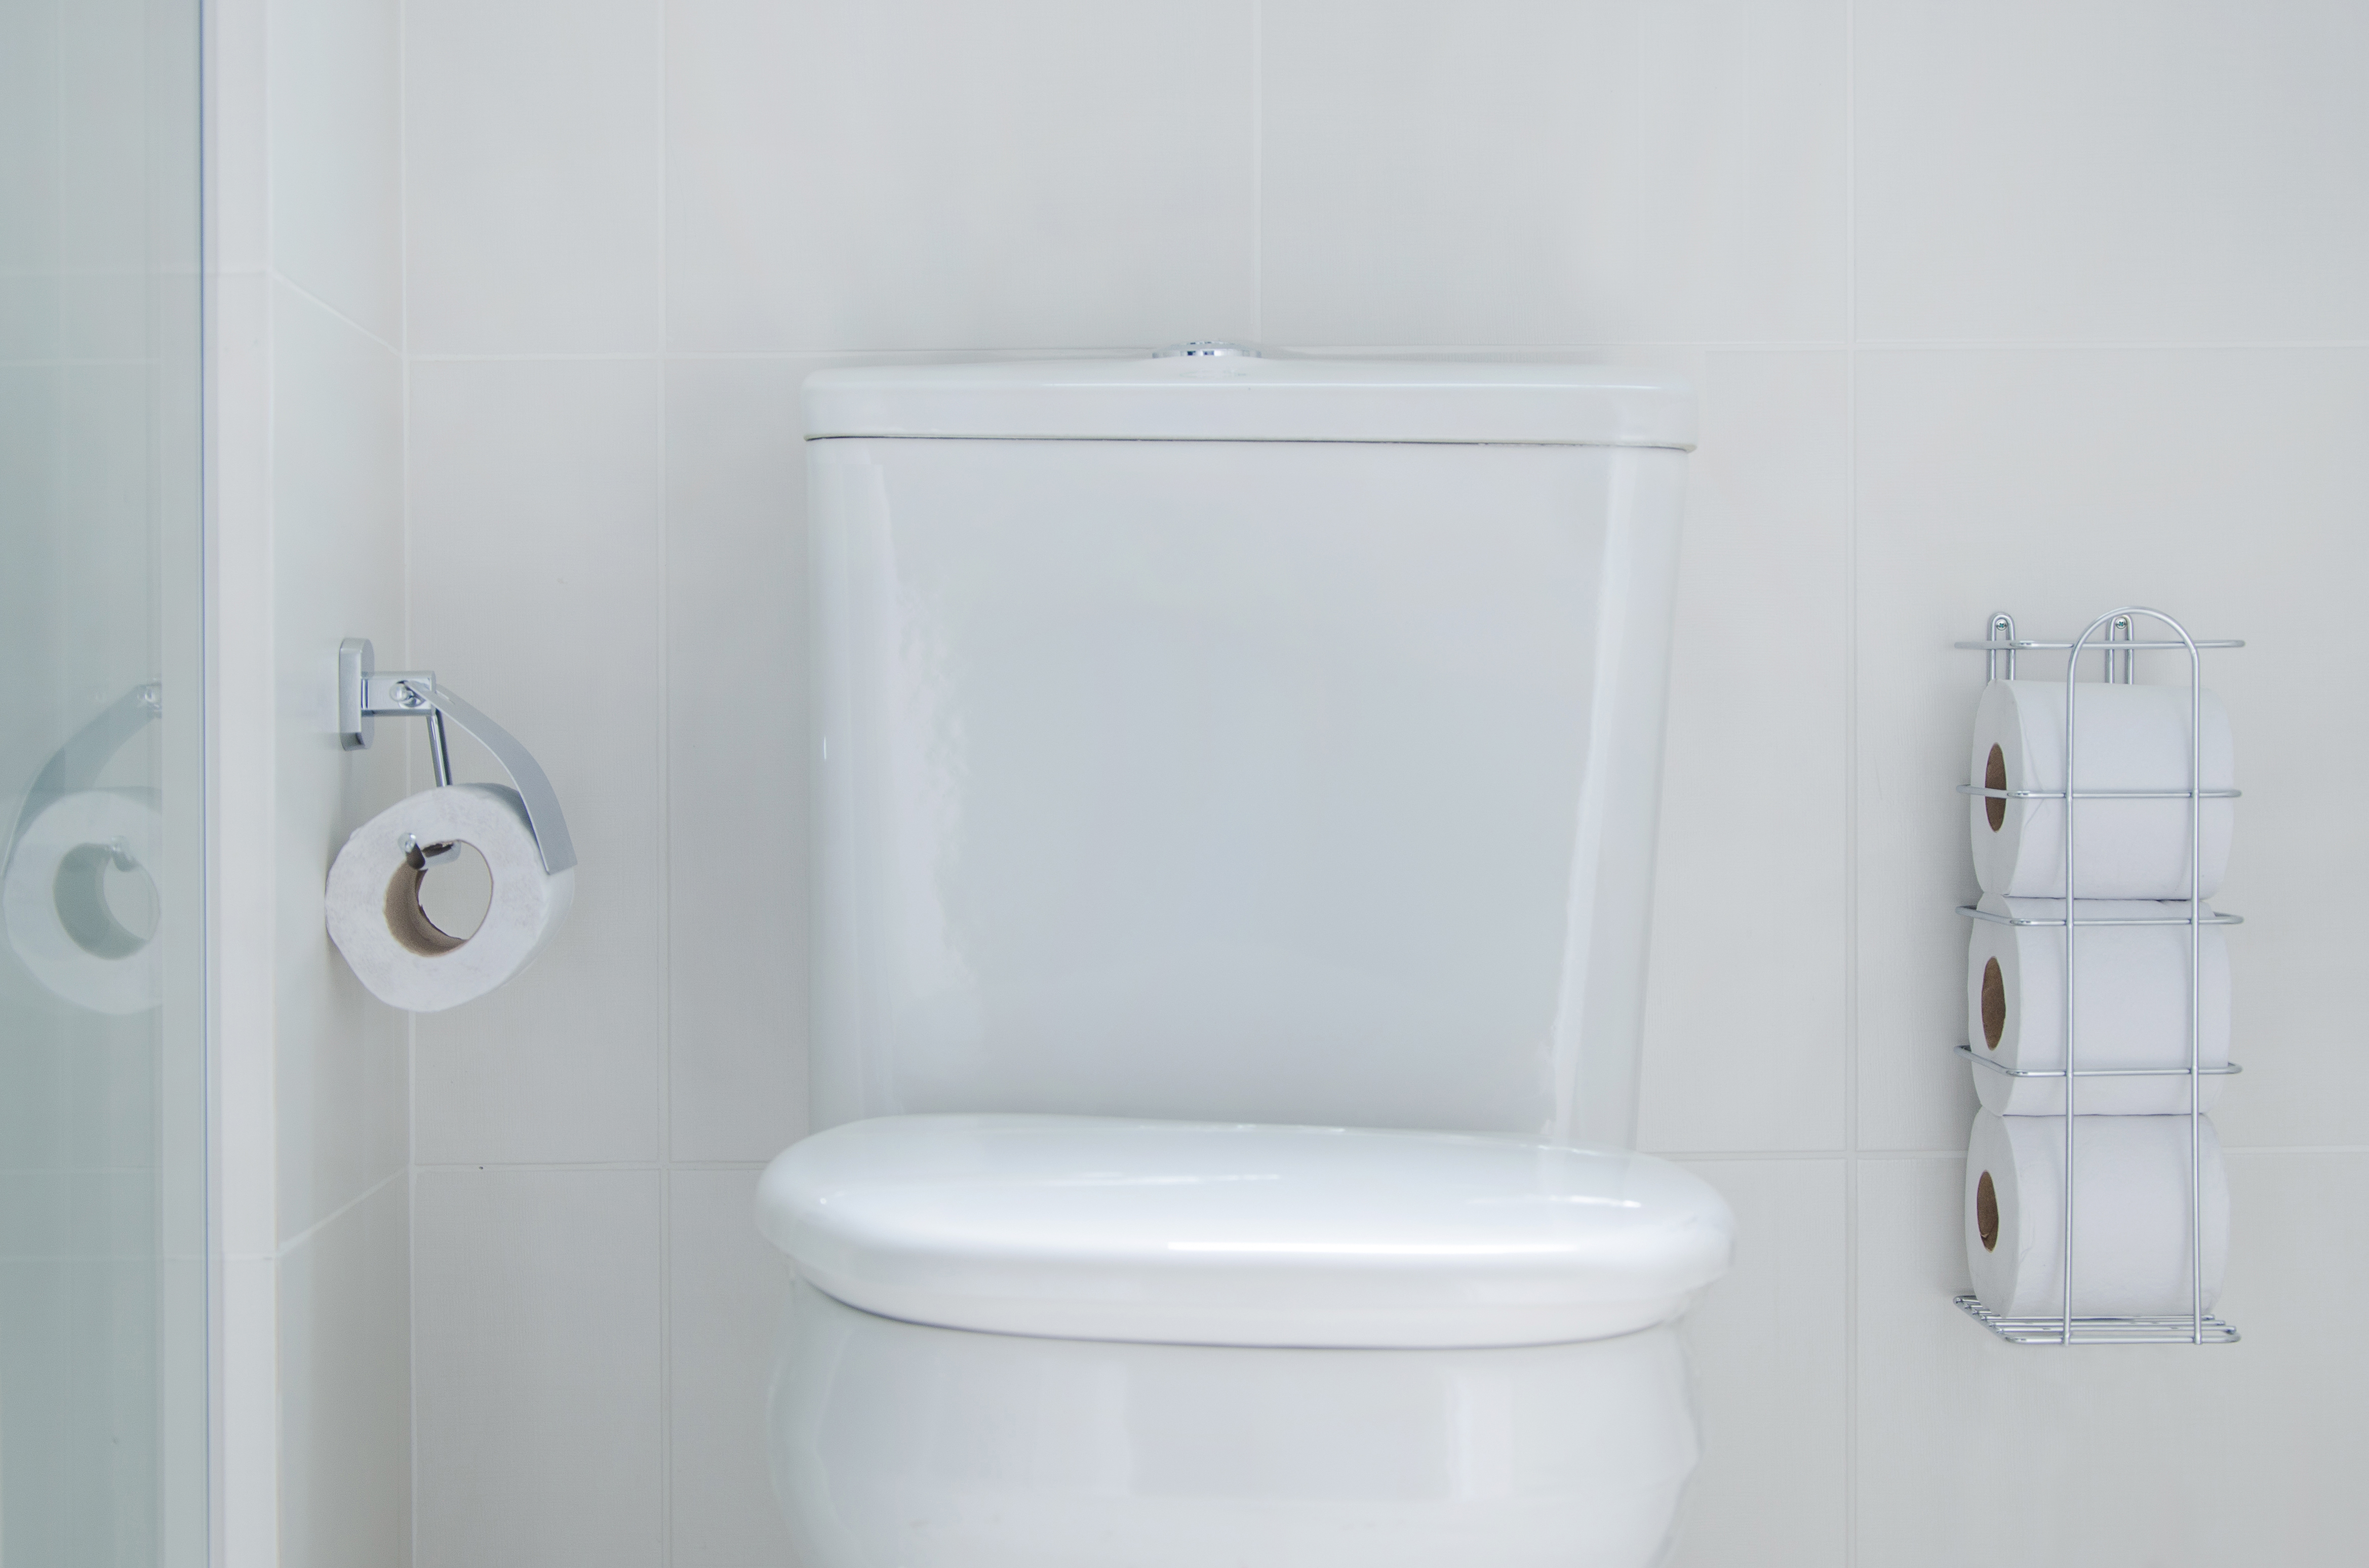 A imagem mostra a área do vaso sanitário de um banheiro. O vaso sanitário está posicionado ao centro da imagem, possui uma caixa acoplada e um assento branco, que está fechado. Na parede ao lado esquerdo da imagem, há um suporte de papel higiênico comum. Já no lado direito, na mesma parede da caixa acoplada, há um porta-papel higiênico prata, que armazena três rolos.